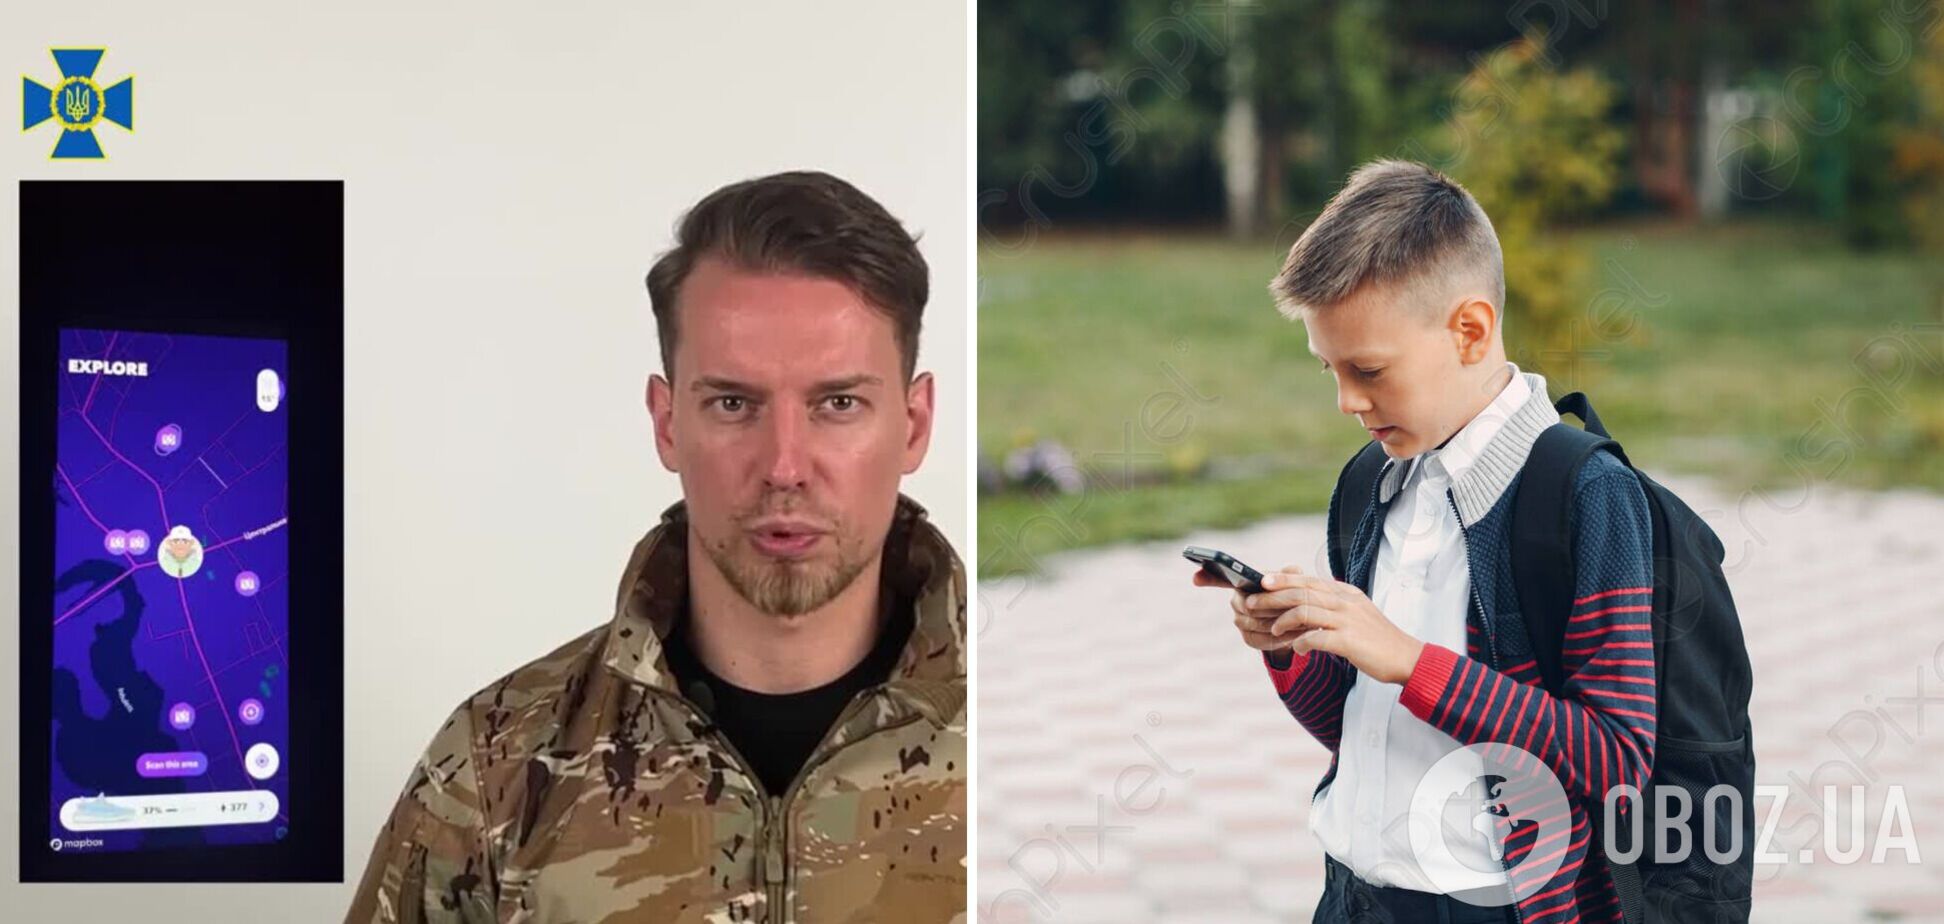 РФ использовала игры на телефонах для вербовки детей в Украине: в СБУ раскрыли схему